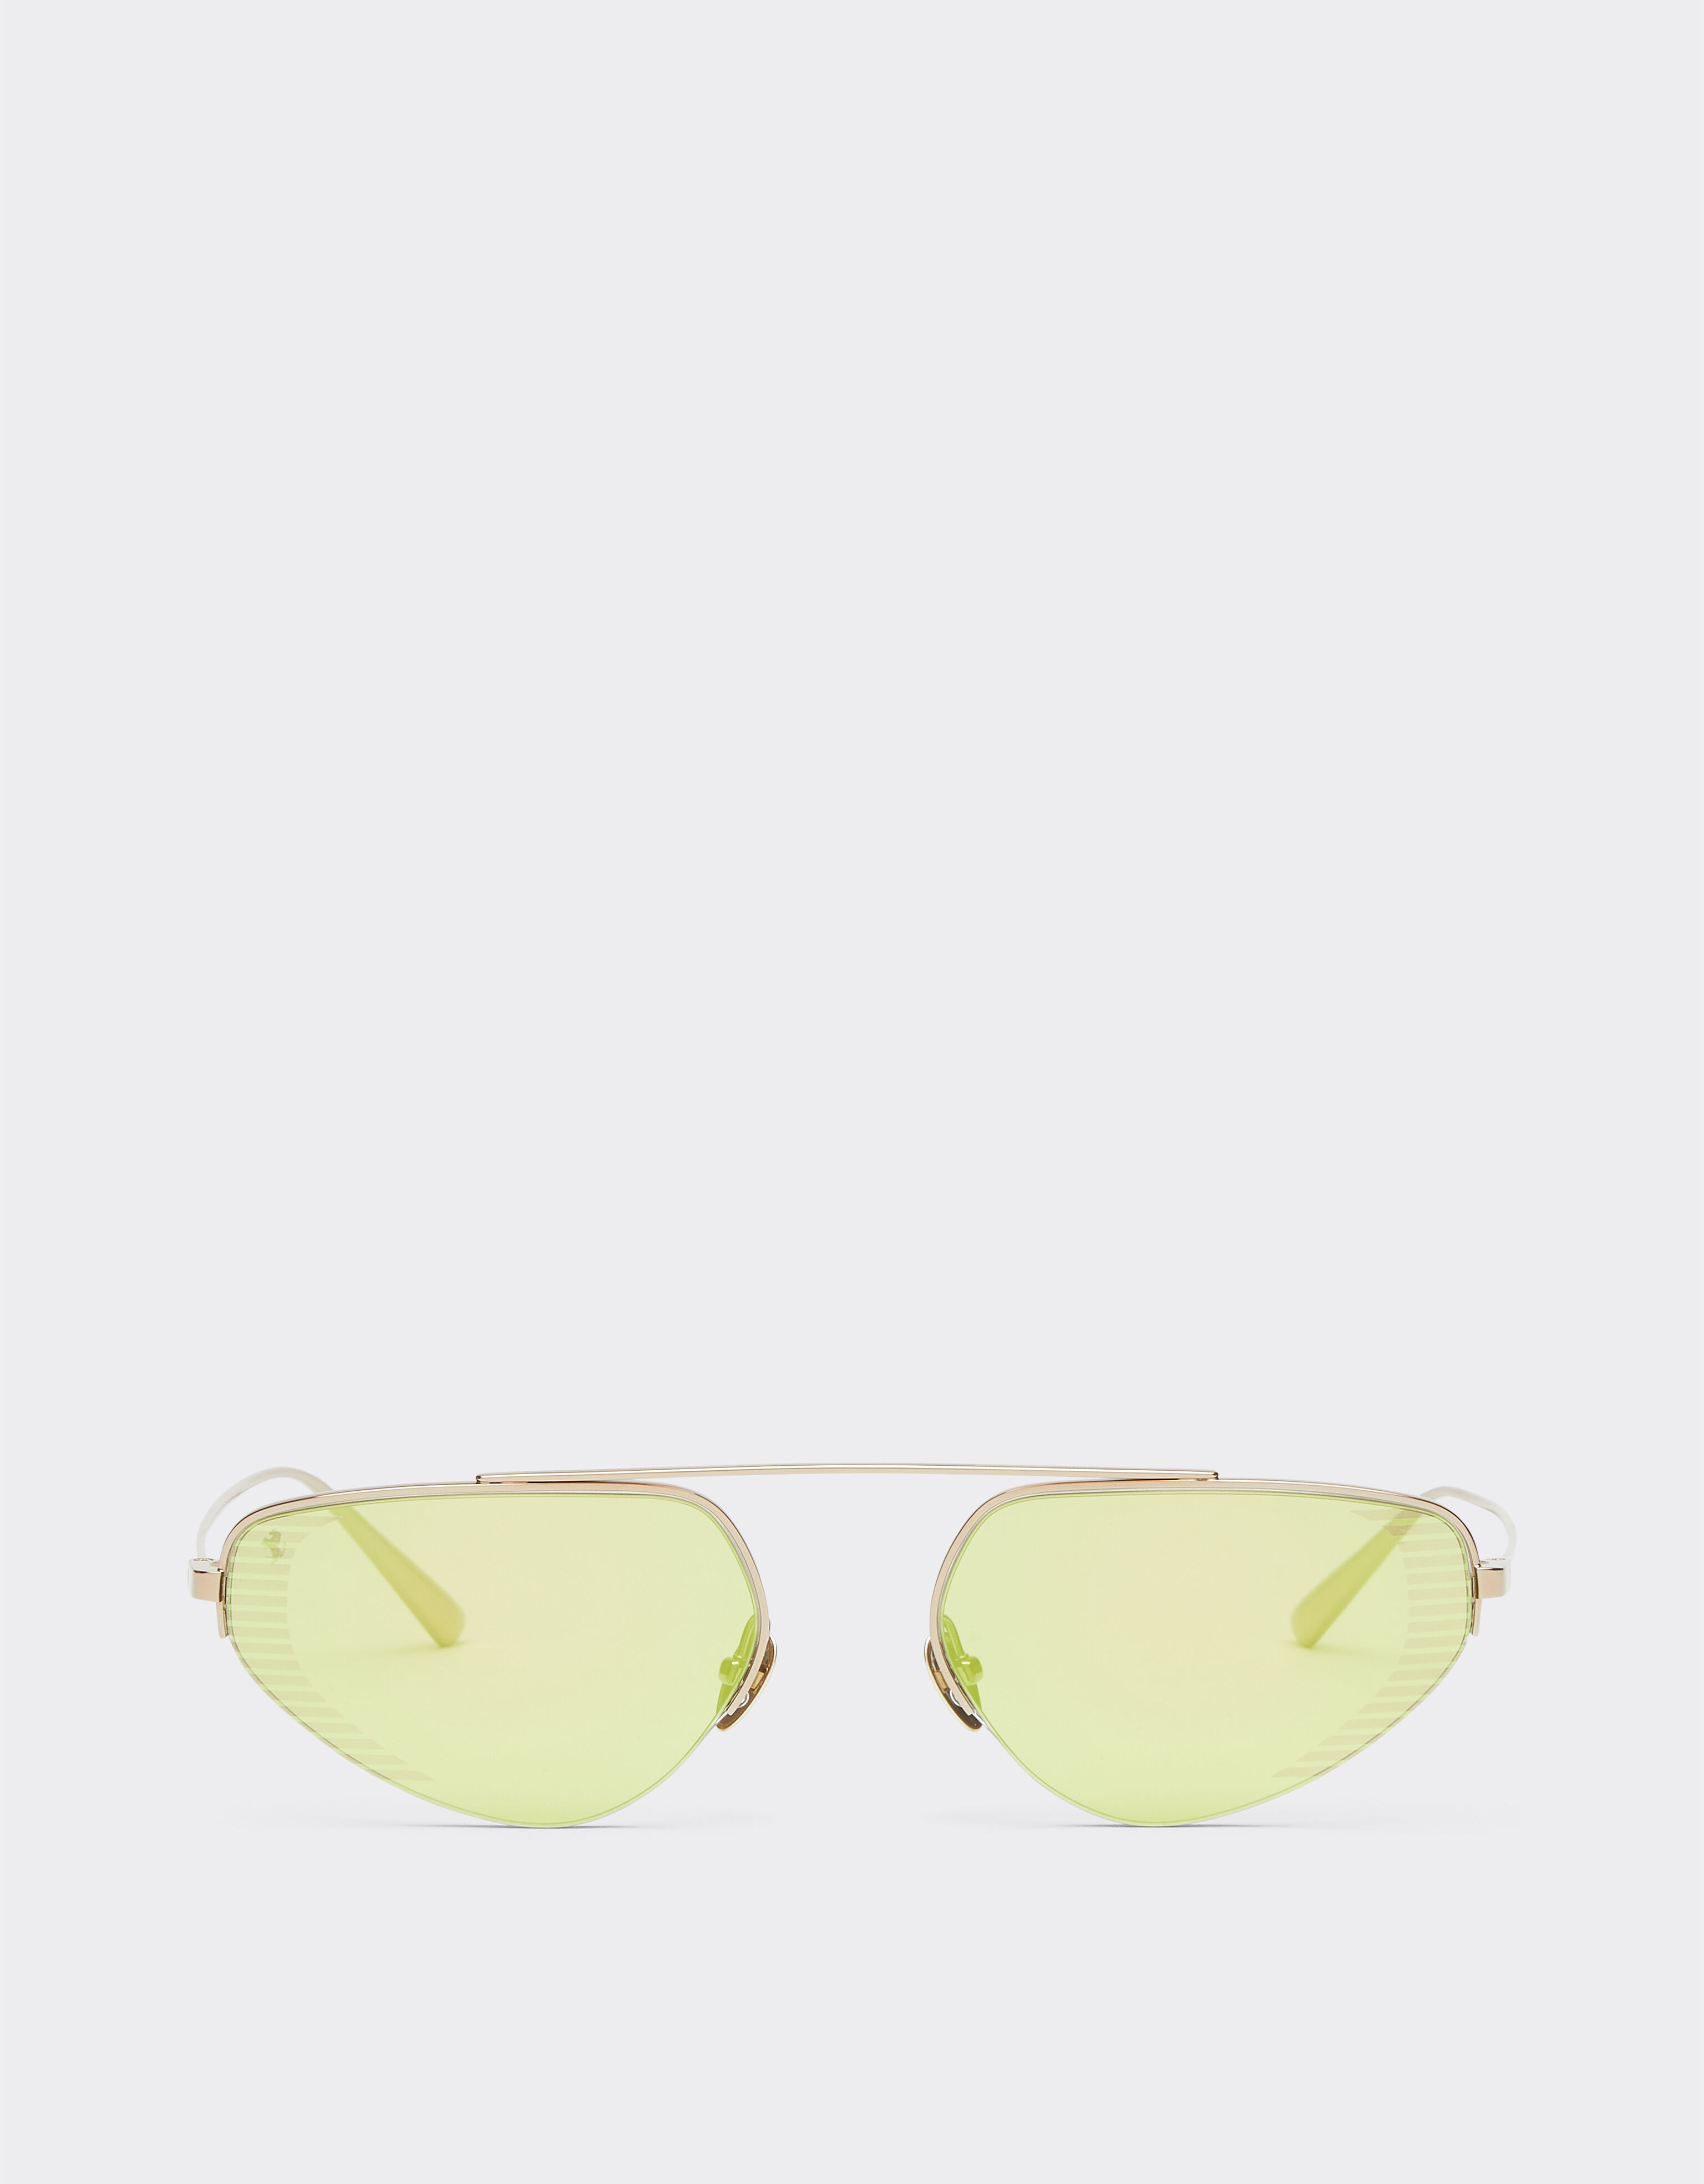 Ferrari Ferrari sunglasses in gold-tone titanium with green mirror lenses Black F1201f